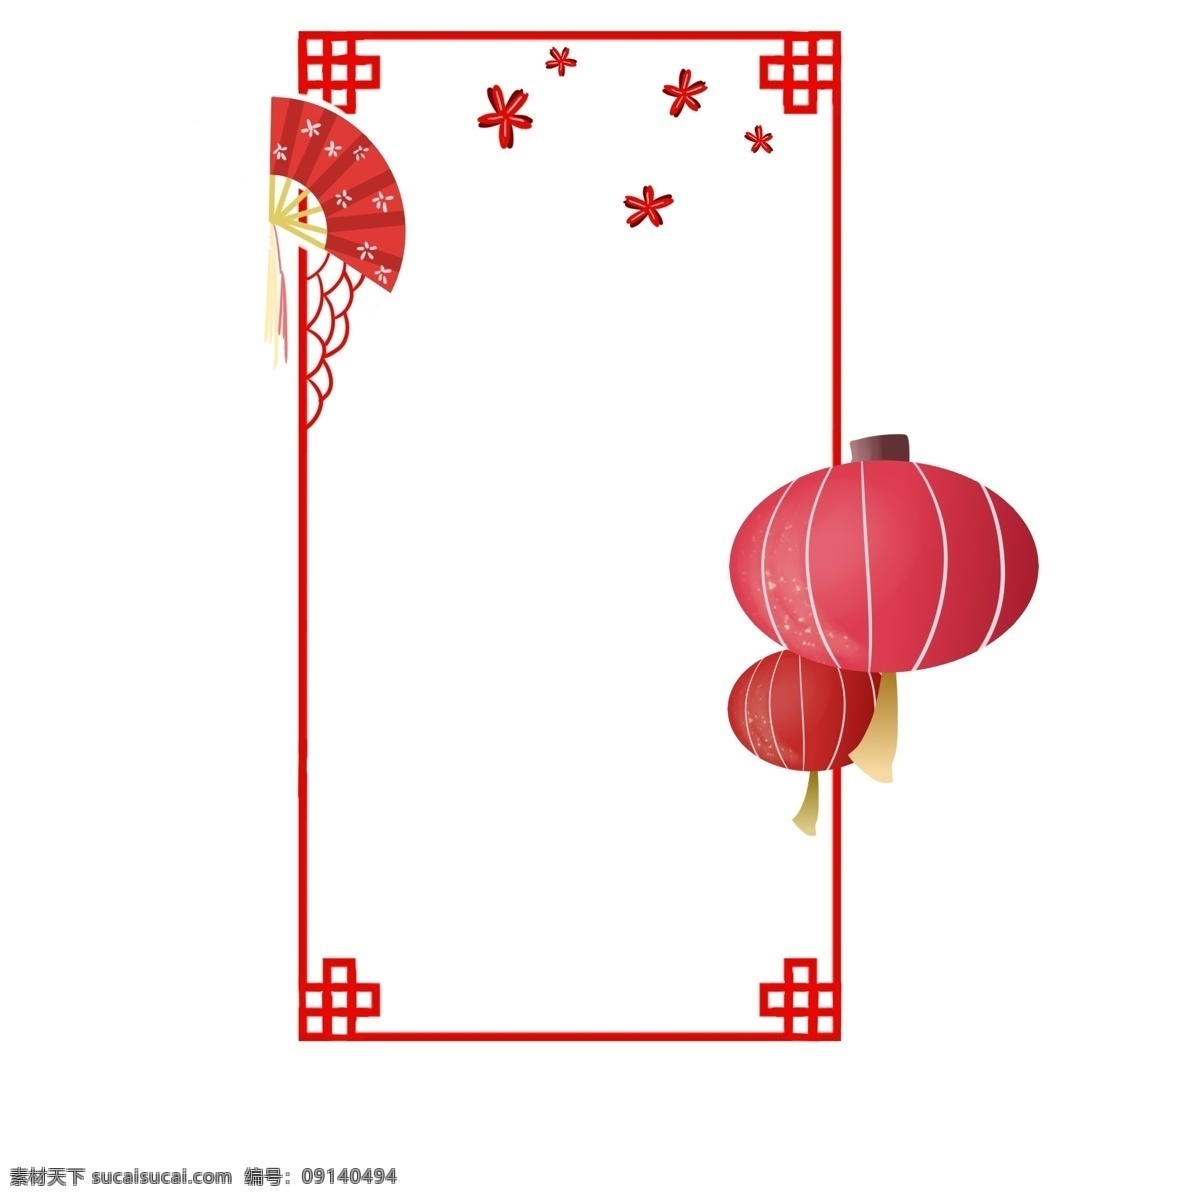 灯笼 扇子 红色 喜庆 边框 大红 高高 挂 小梅花 中国红 热闹 梅花纹样扇子 中国文边框 新年